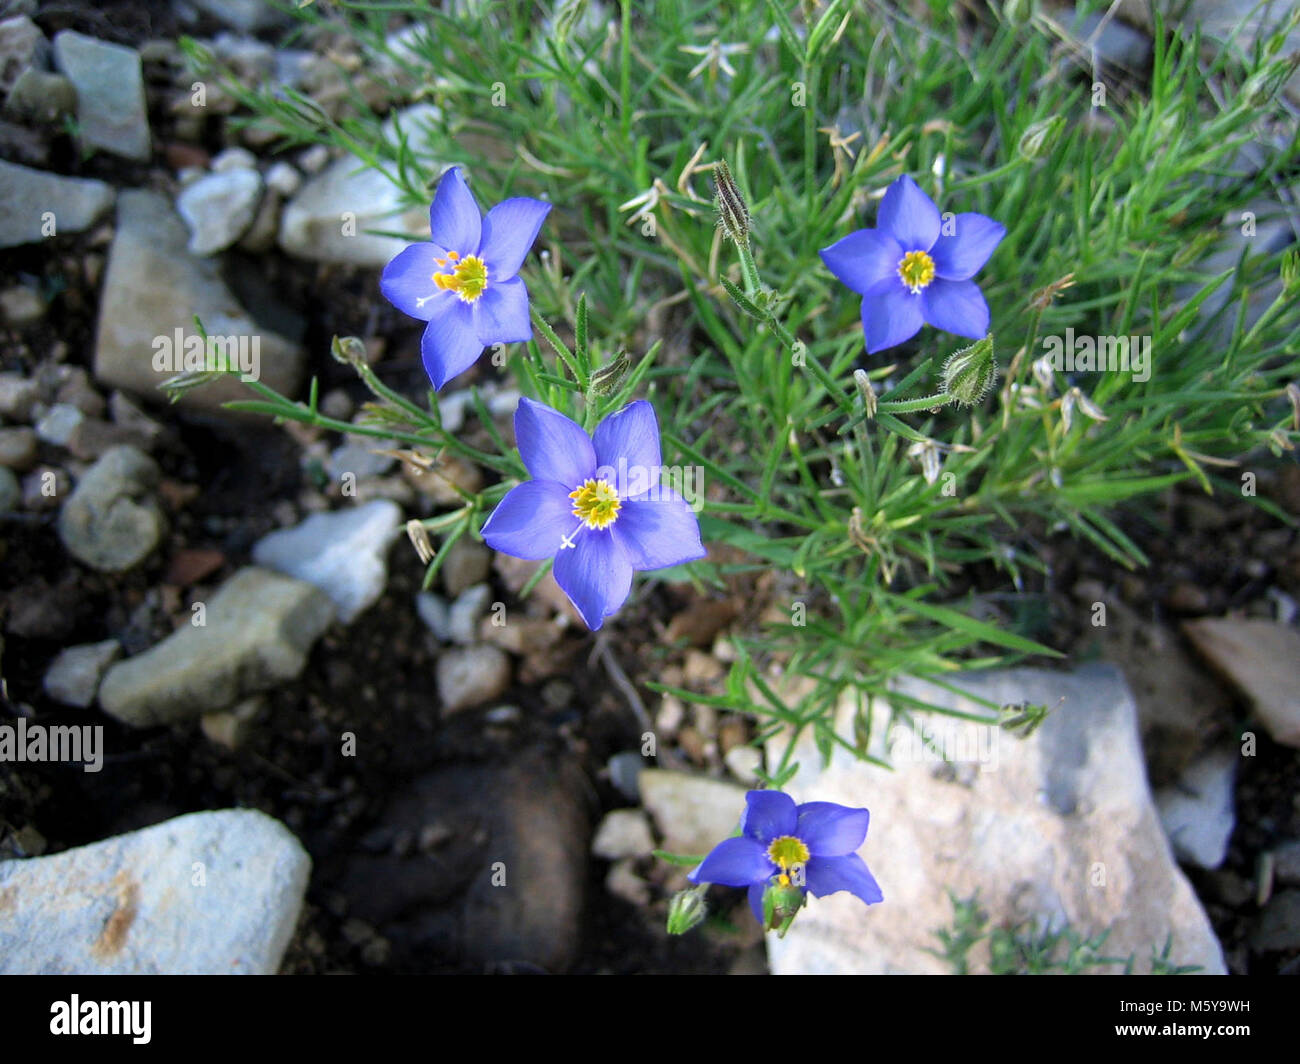 Gilia rigidula (Blue Gilia). Stock Photo